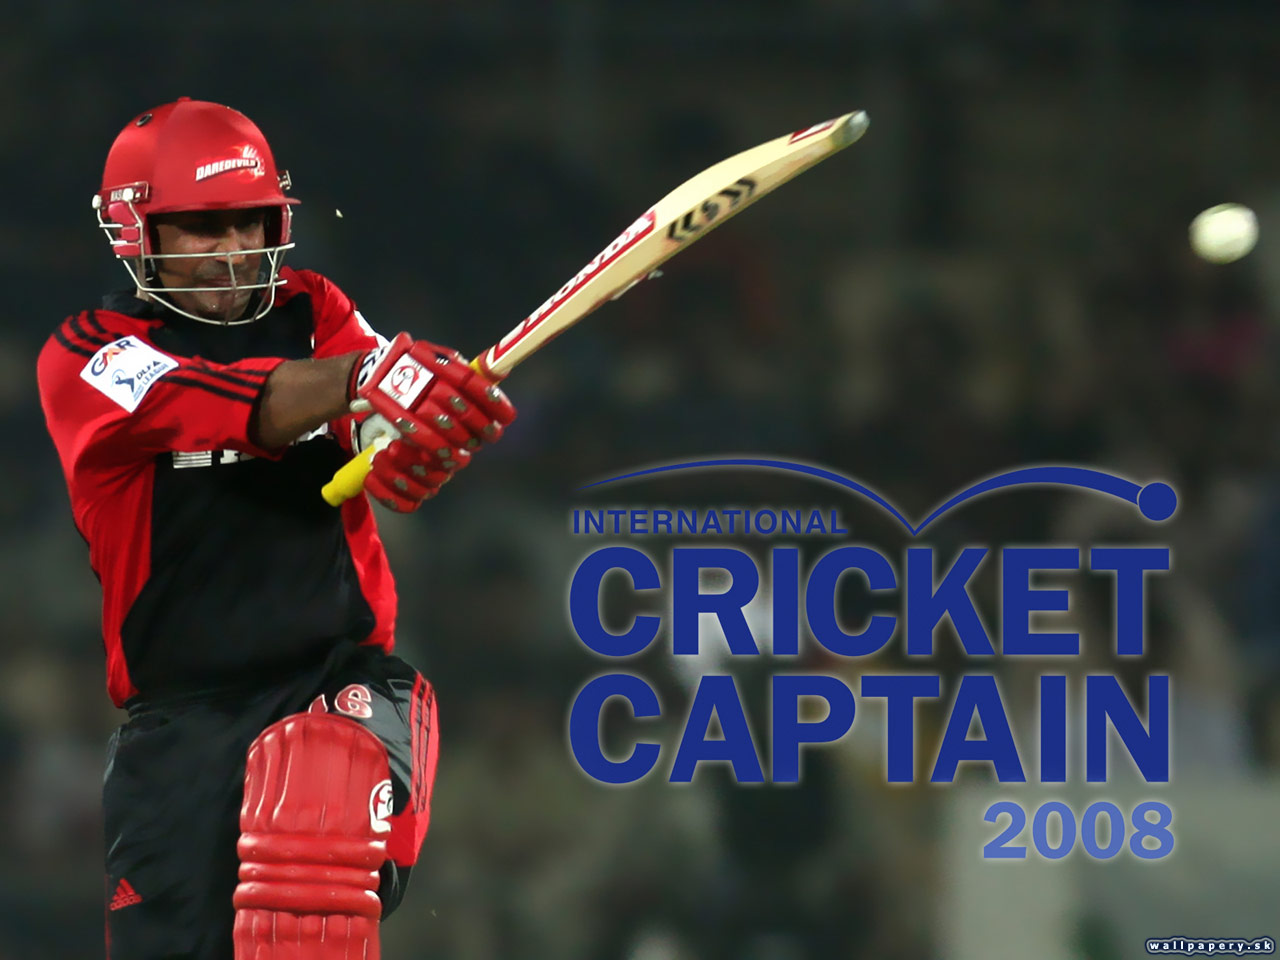 International Cricket Captain 2008 - wallpaper 2